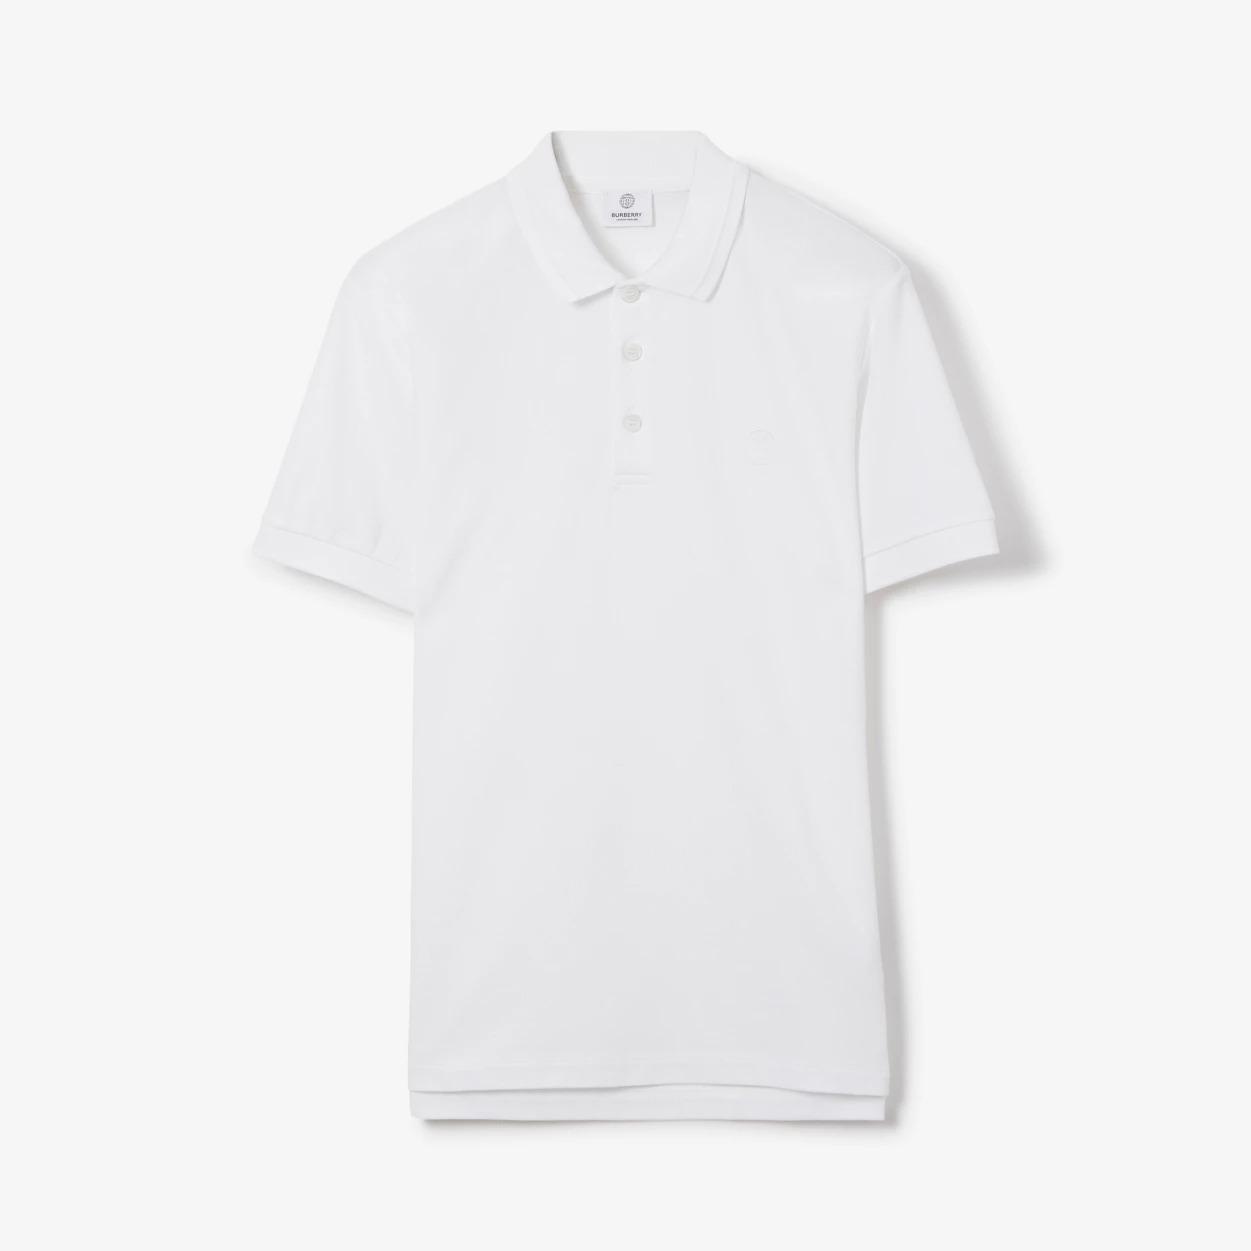 monogram-motif-cotton-pique-polo-shirt-6922_16845016651-1000